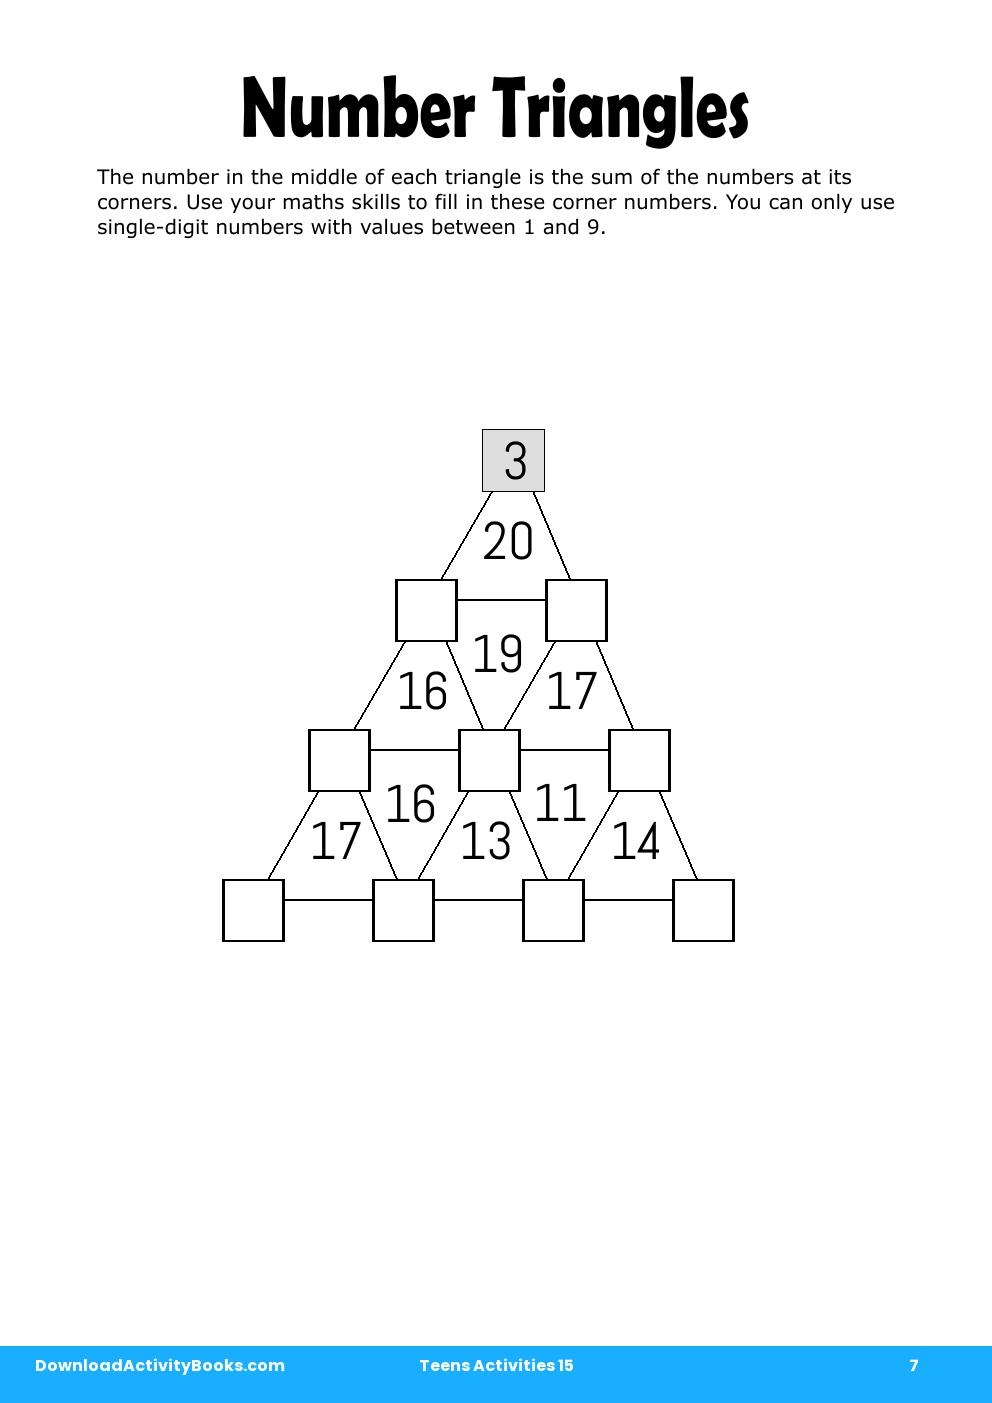 Number Triangles in Teens Activities 15